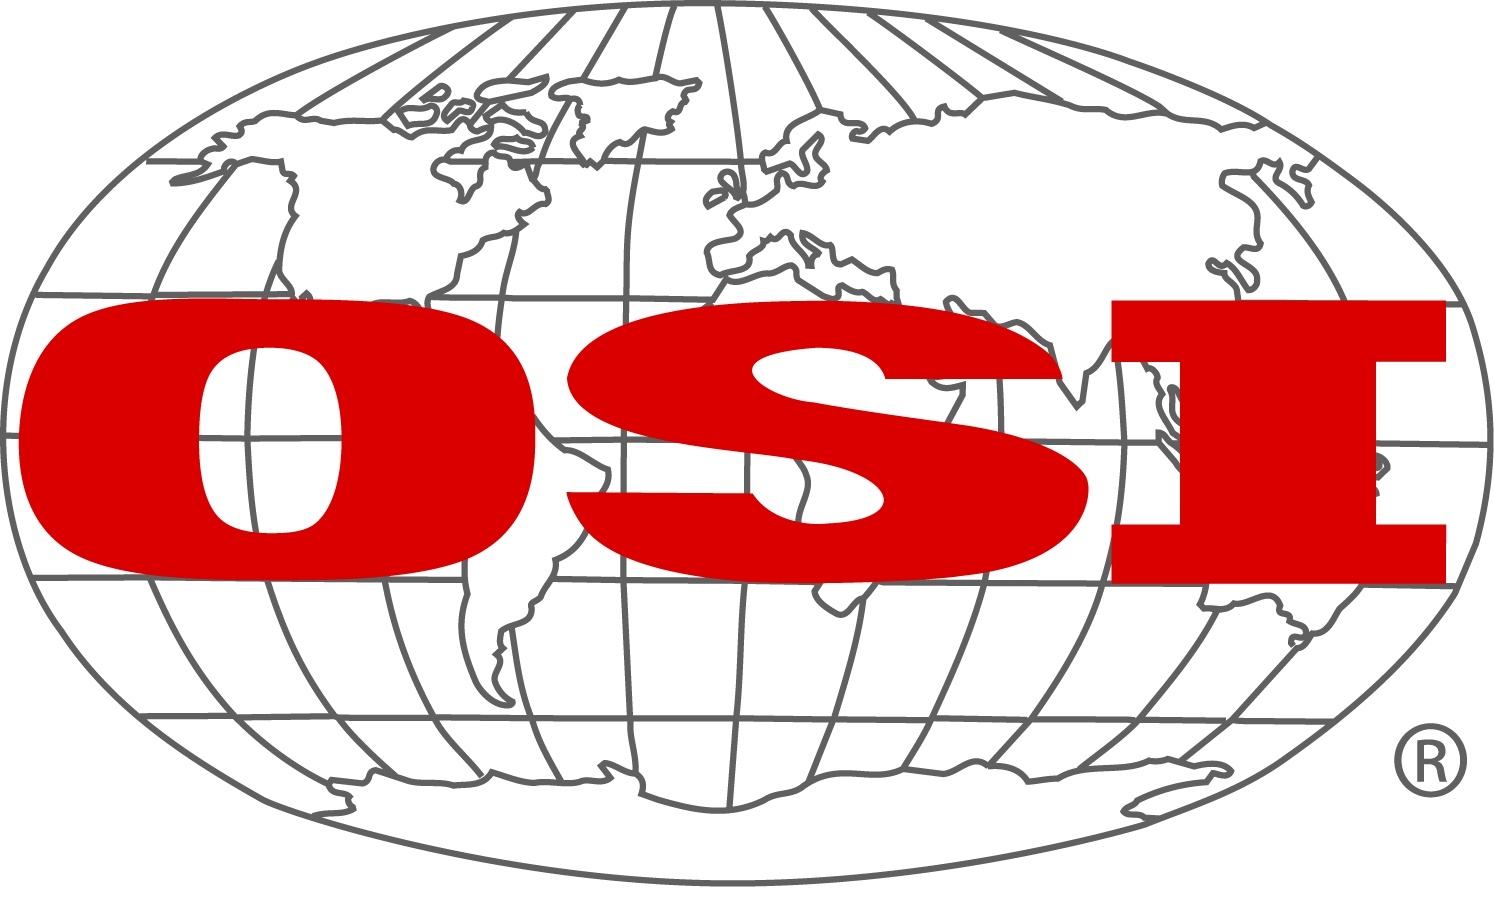 OSI Group Logo.jpg